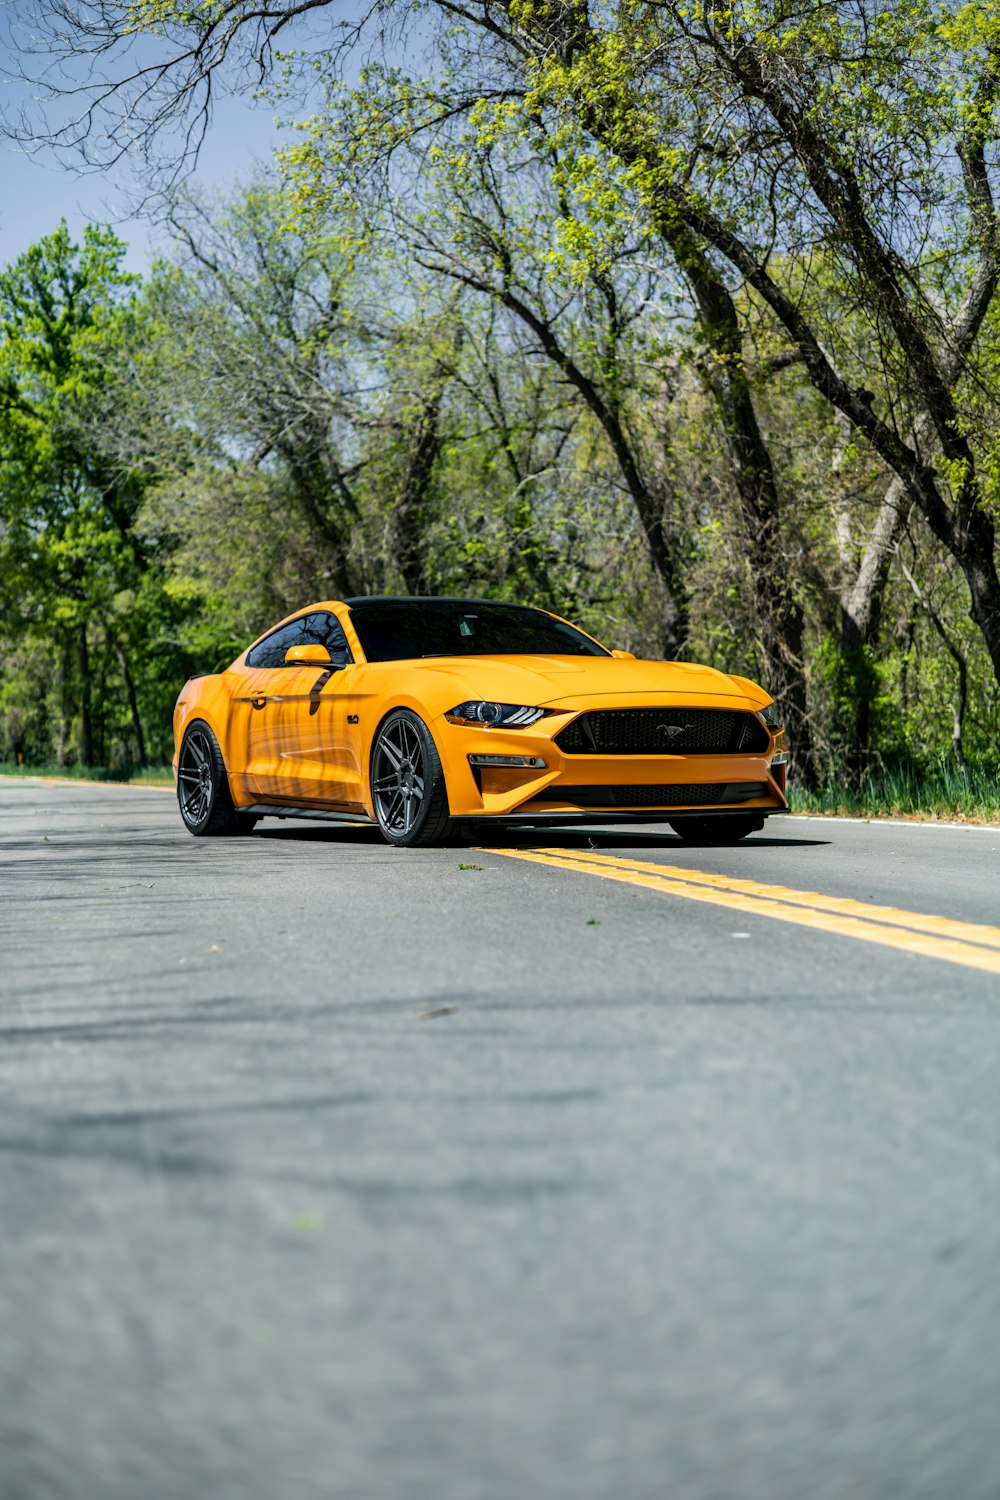 Un Ford Mustang amarillo estacionado al costado de la carretera